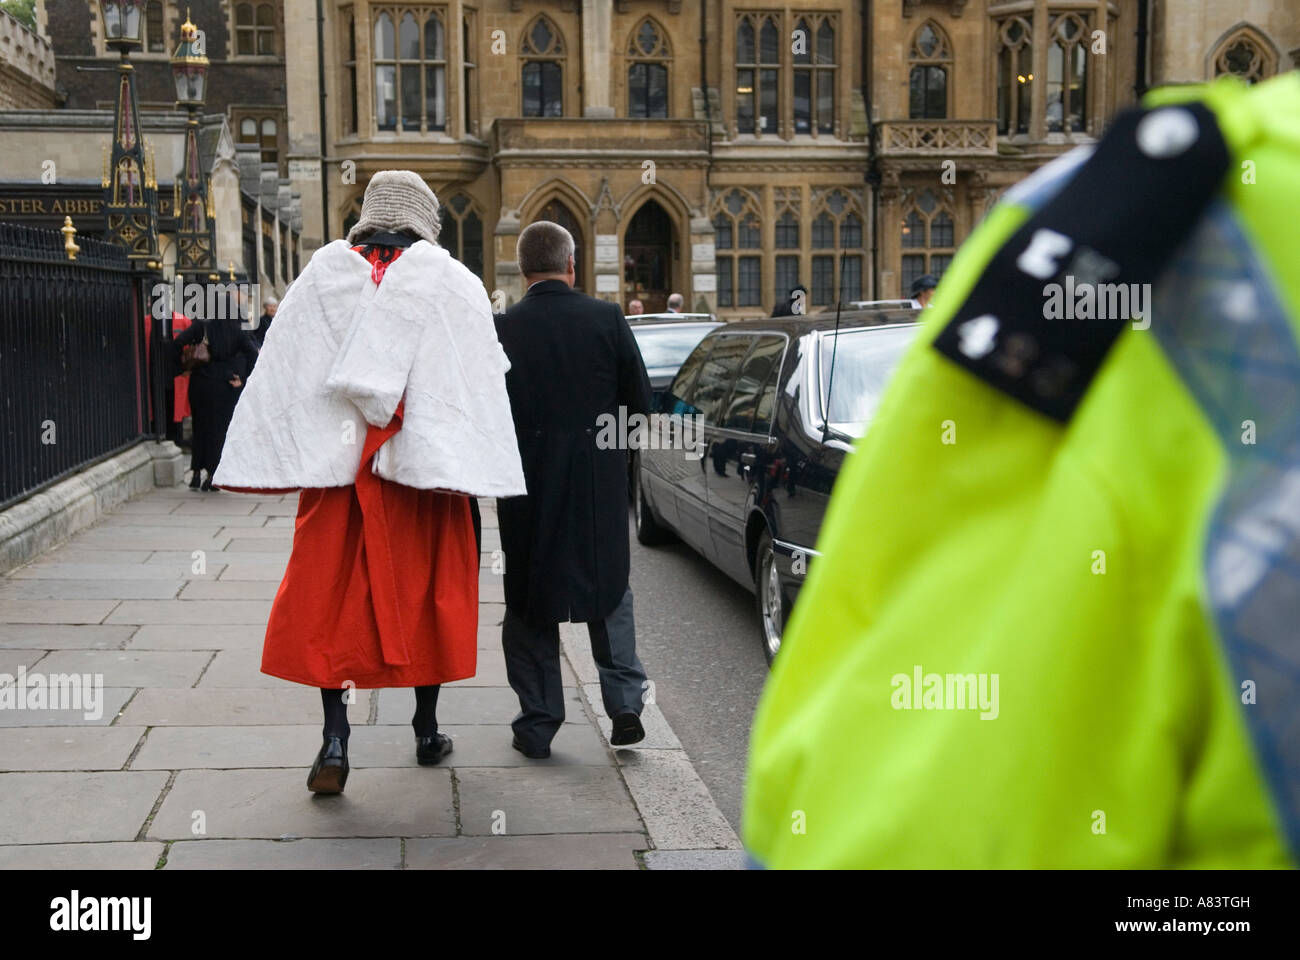 Lord Chancellors Breakfast, un giudice dell'alta Corte arriva all'Abbazia di Westminster, agente di polizia in servizio Londra Inghilterra 2006 2000s UK HOMER SYKES Foto Stock